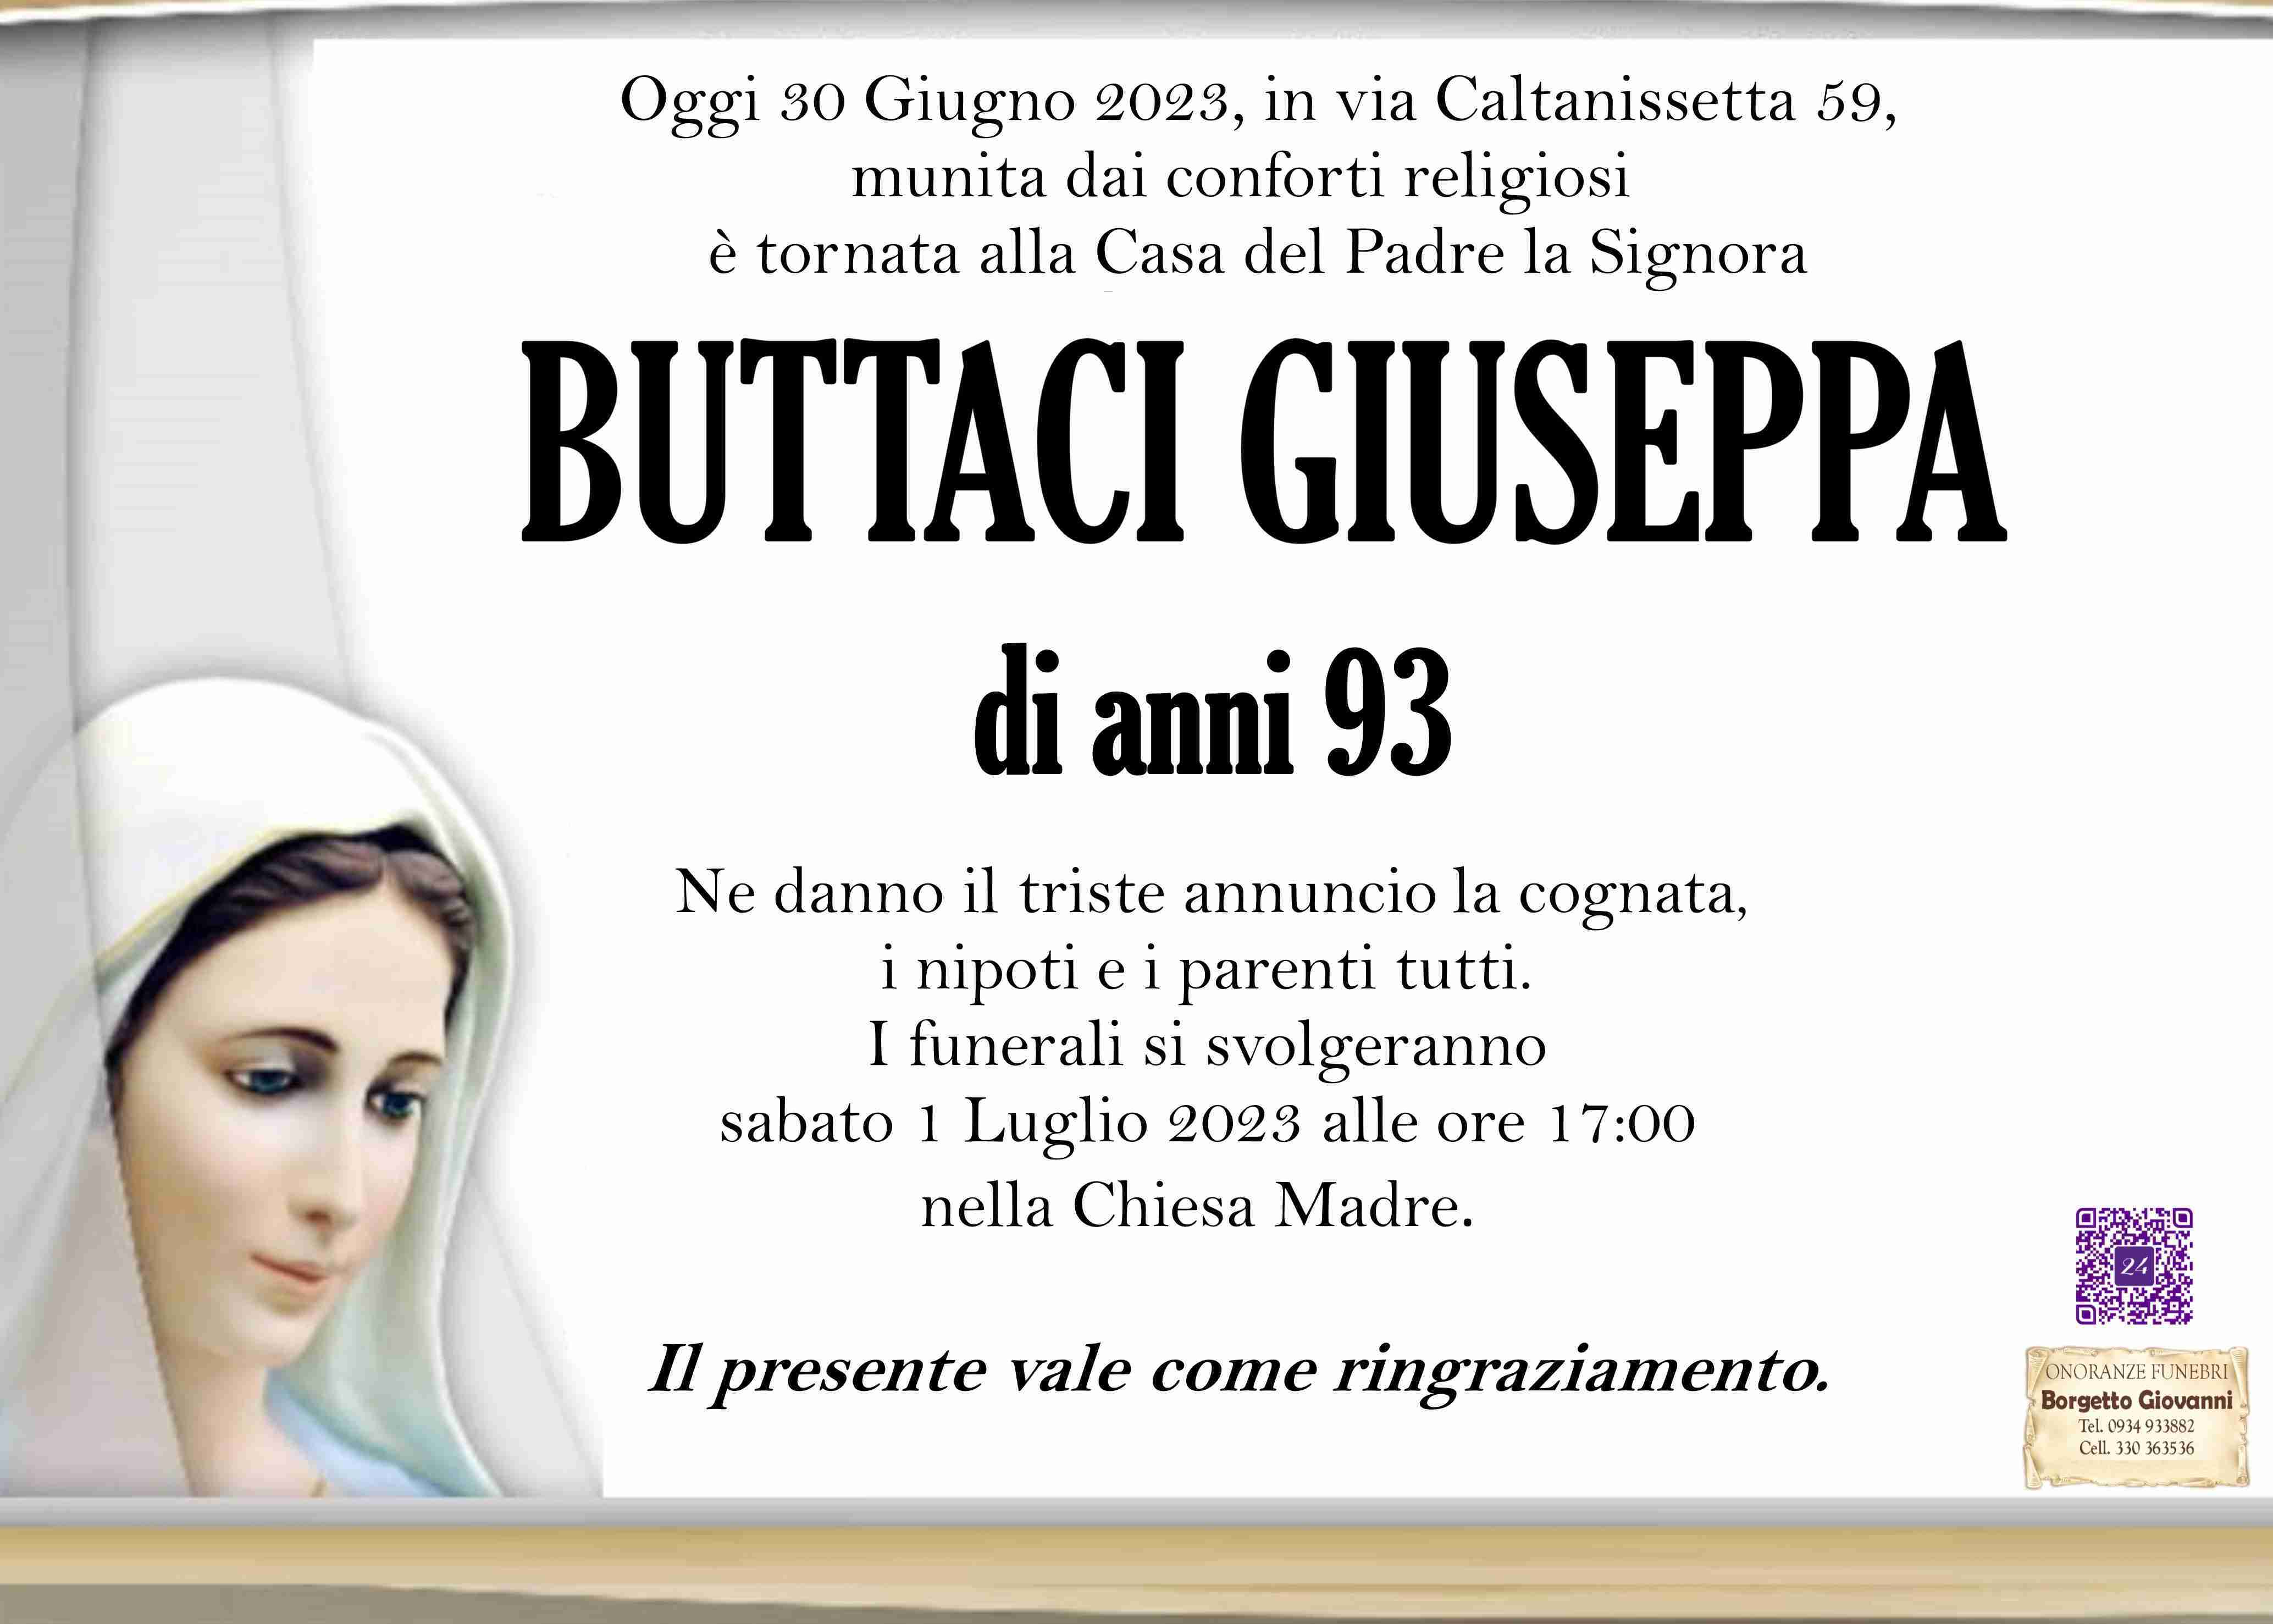 Giuseppa Buttaci